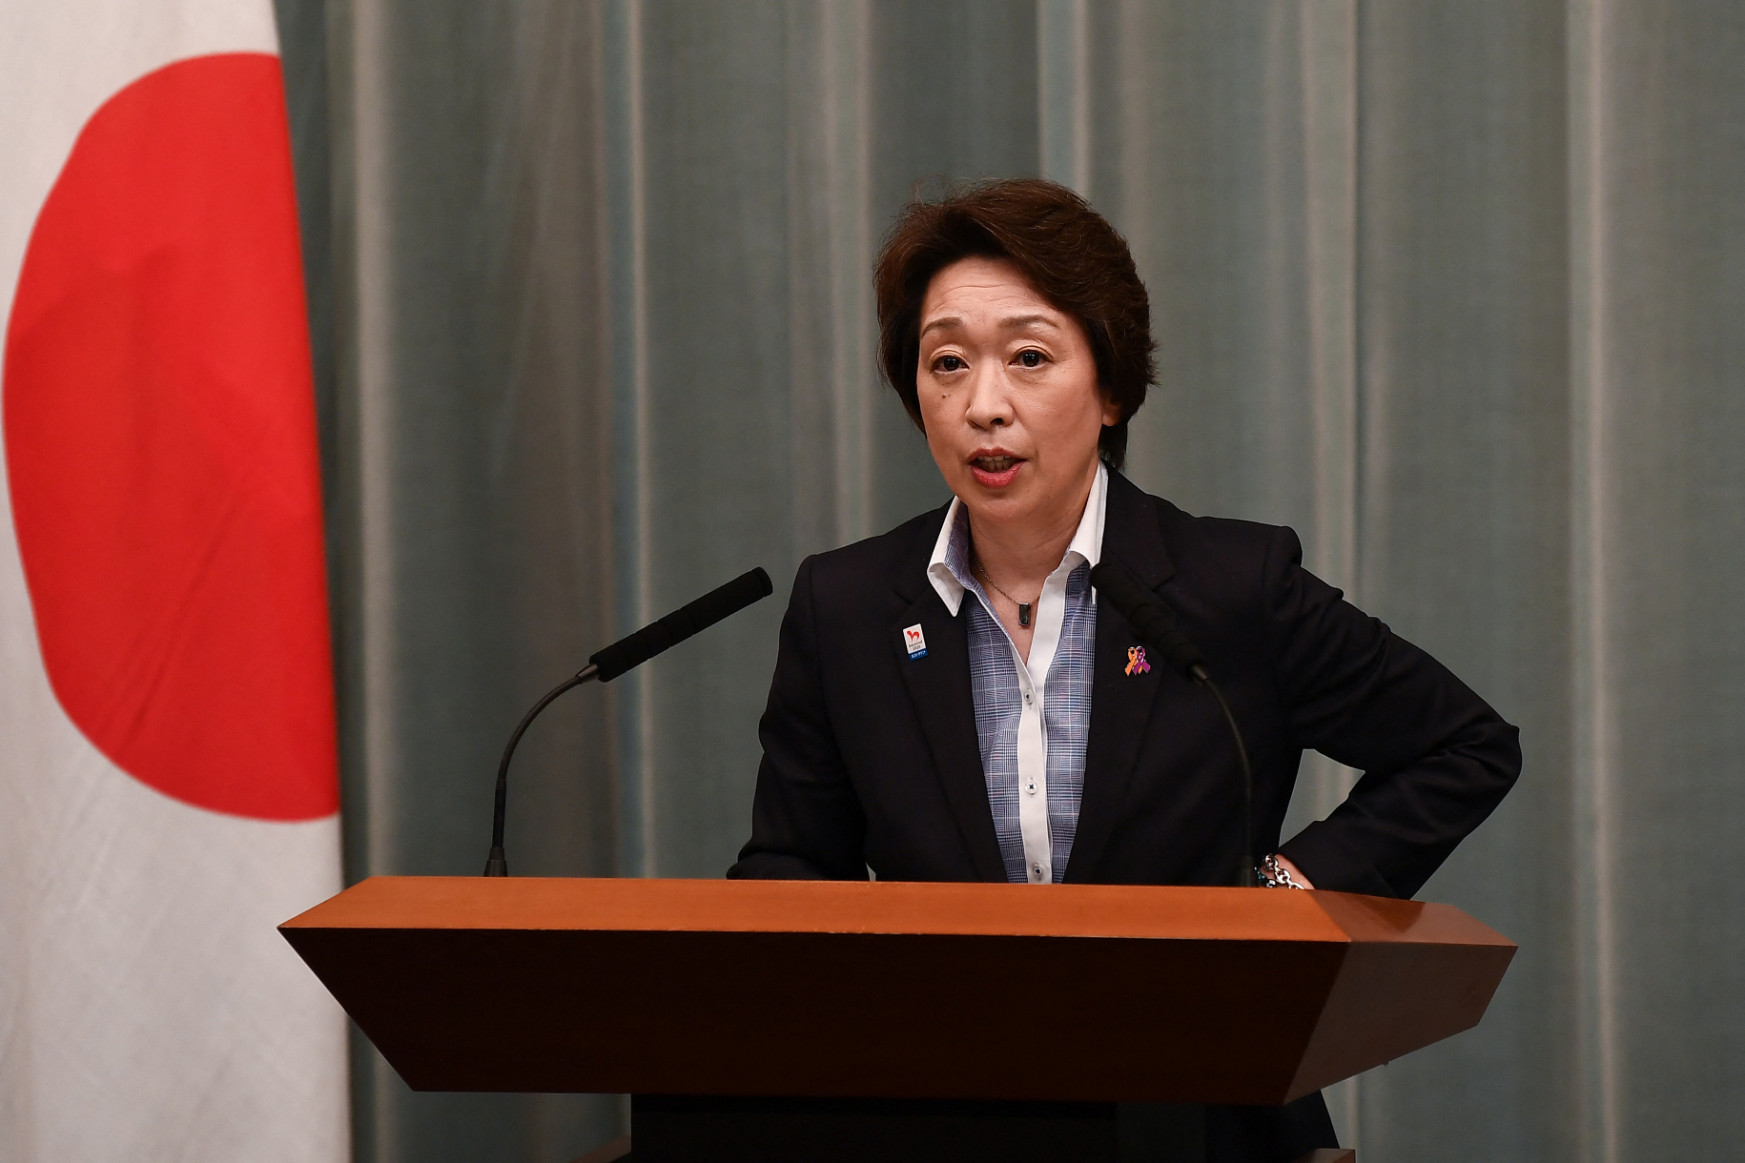 Nőt neveztek ki a nőkön gúnyolódó tokiói olimpiai főnök helyére